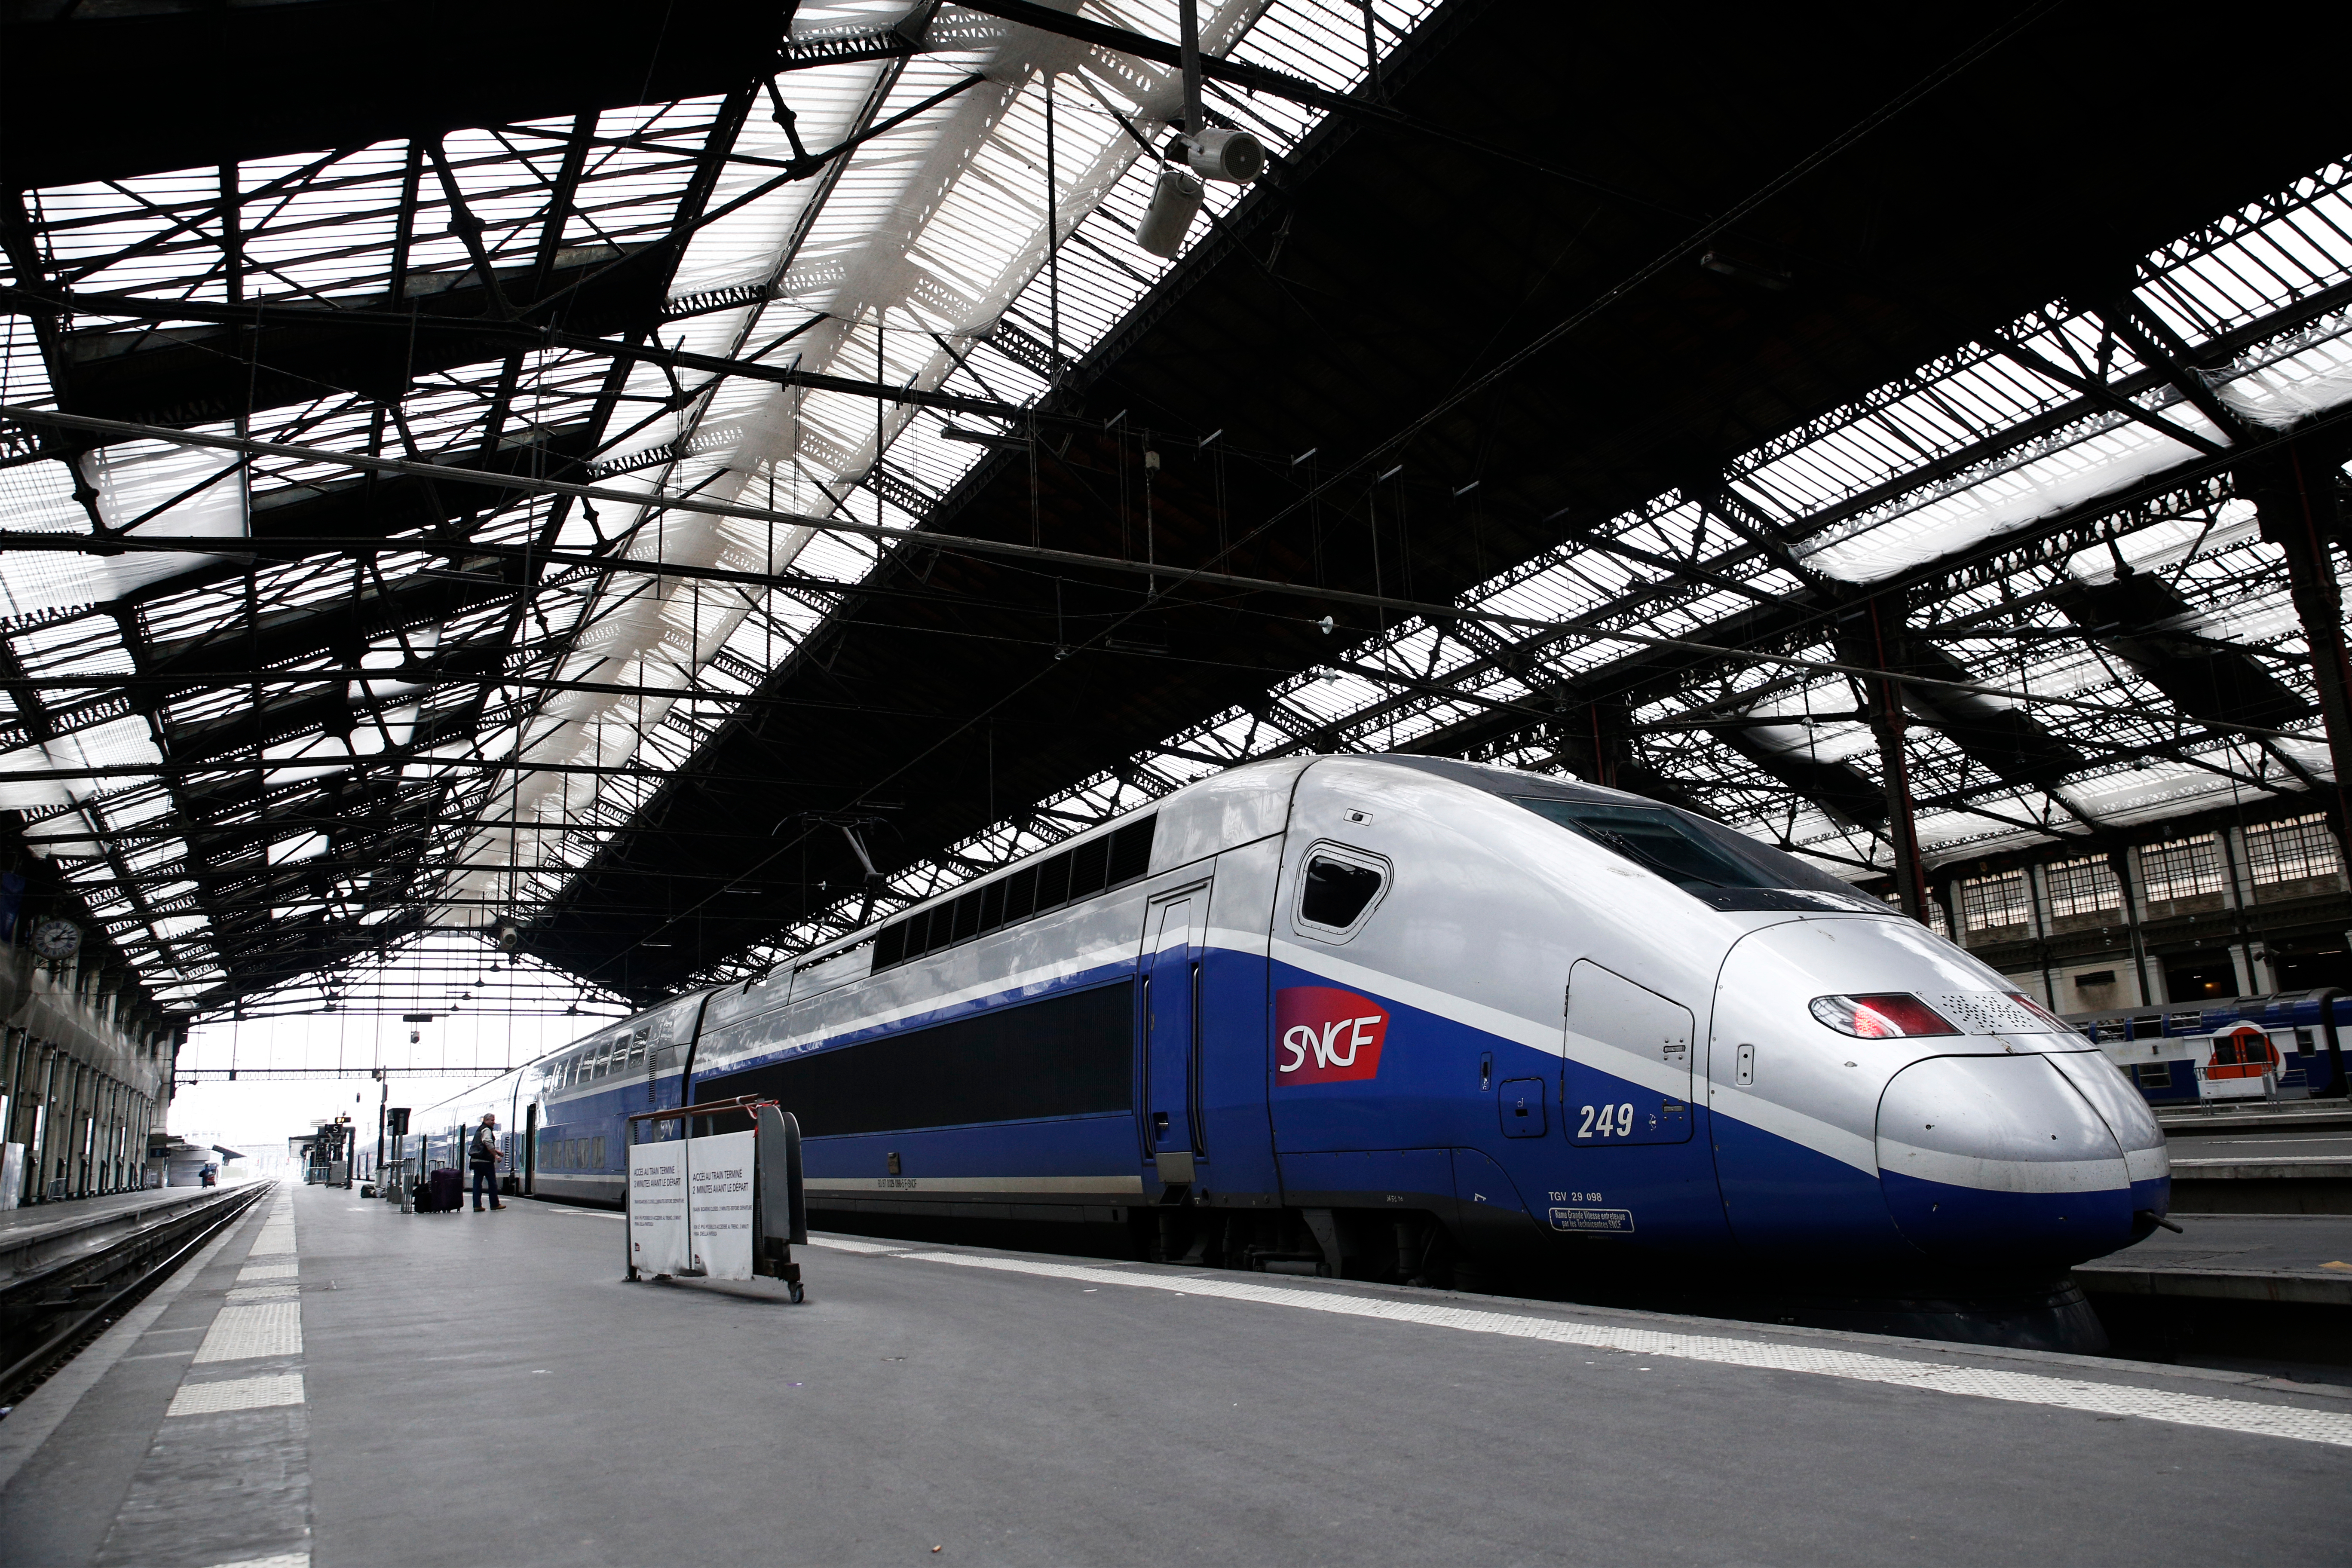 Френските железничари стачкуват, защитавайки синдикалните си права, които ще бъдат засегнати от предстоящи реформи